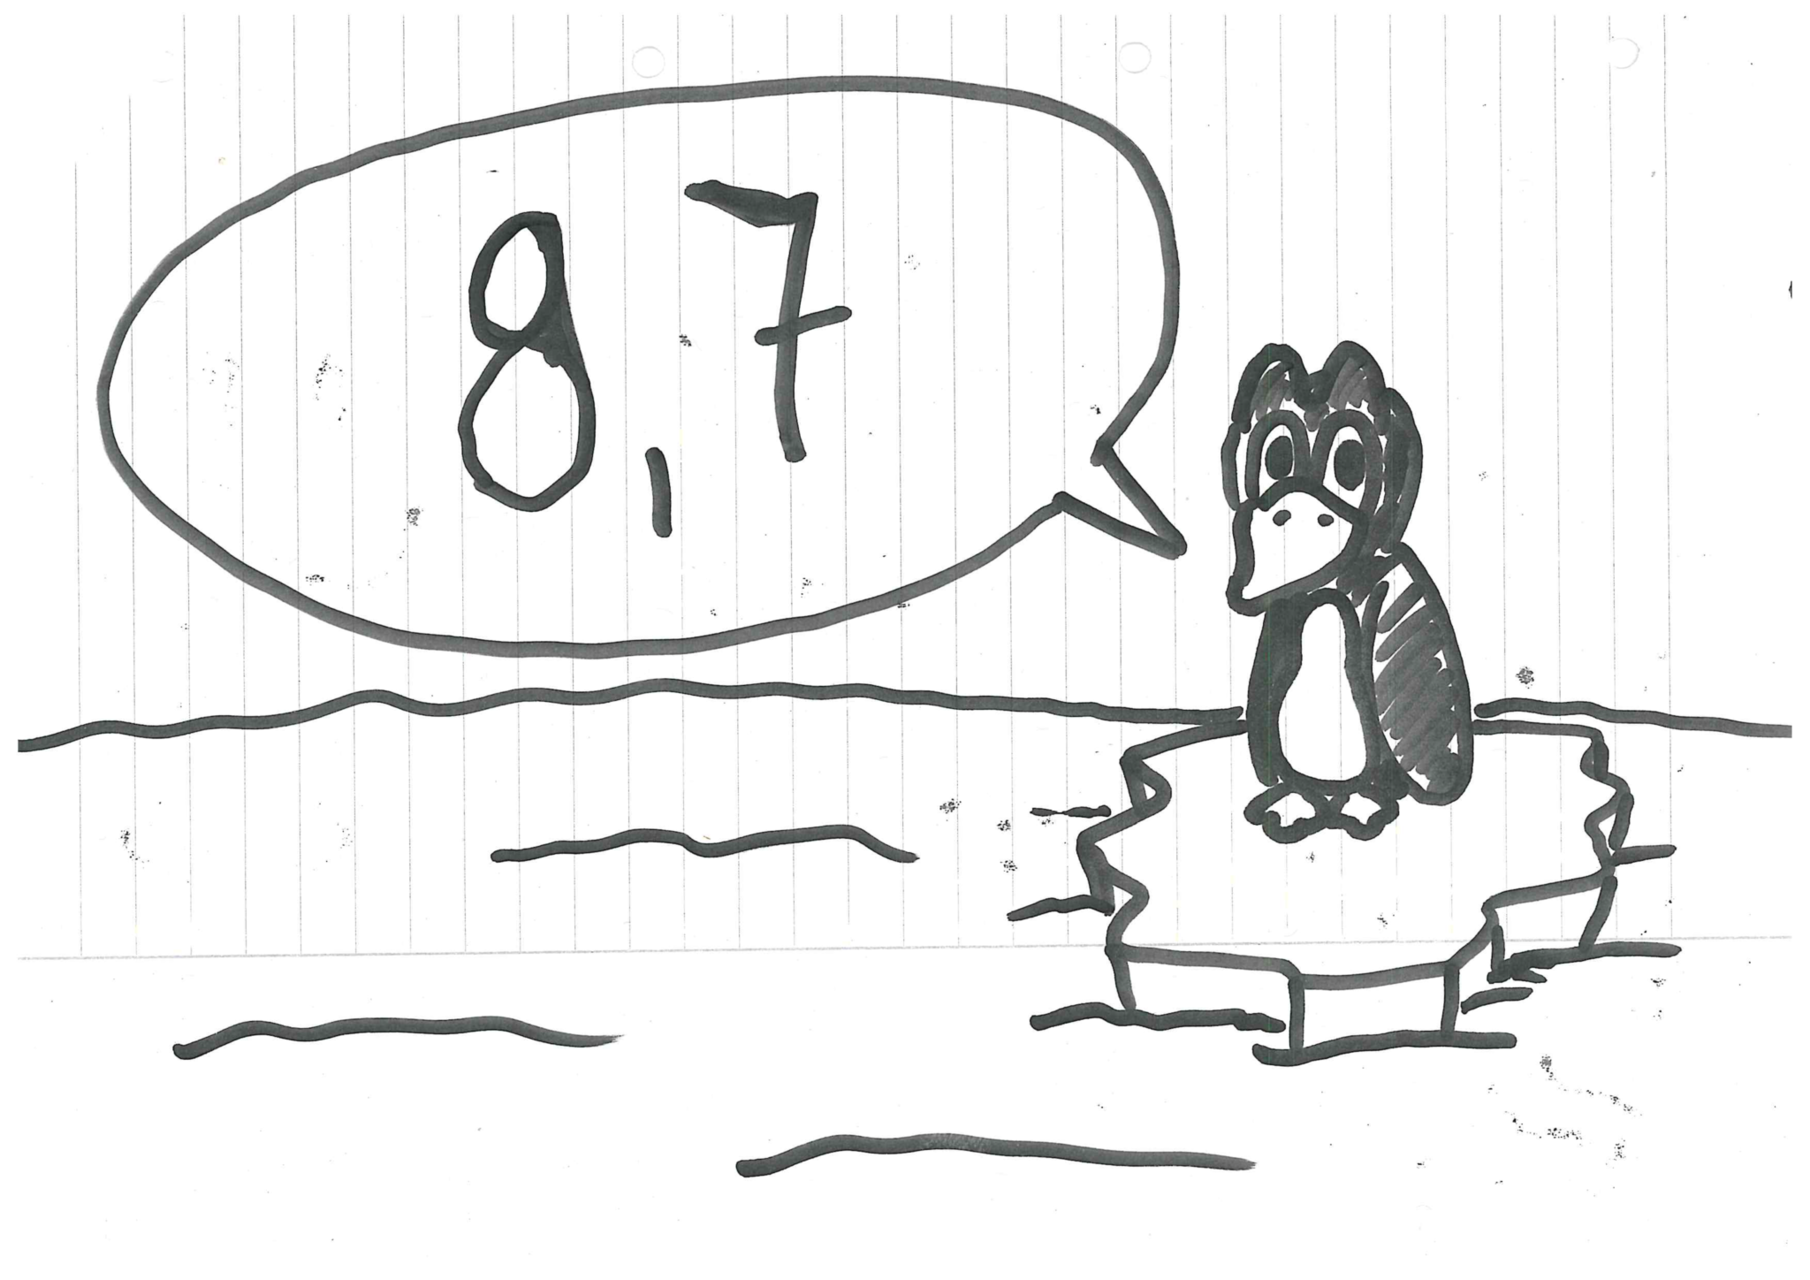 Ein einsamer Pinguin auf einer Eis-Scholle, der die Wertung sagt. Wertung 8,7